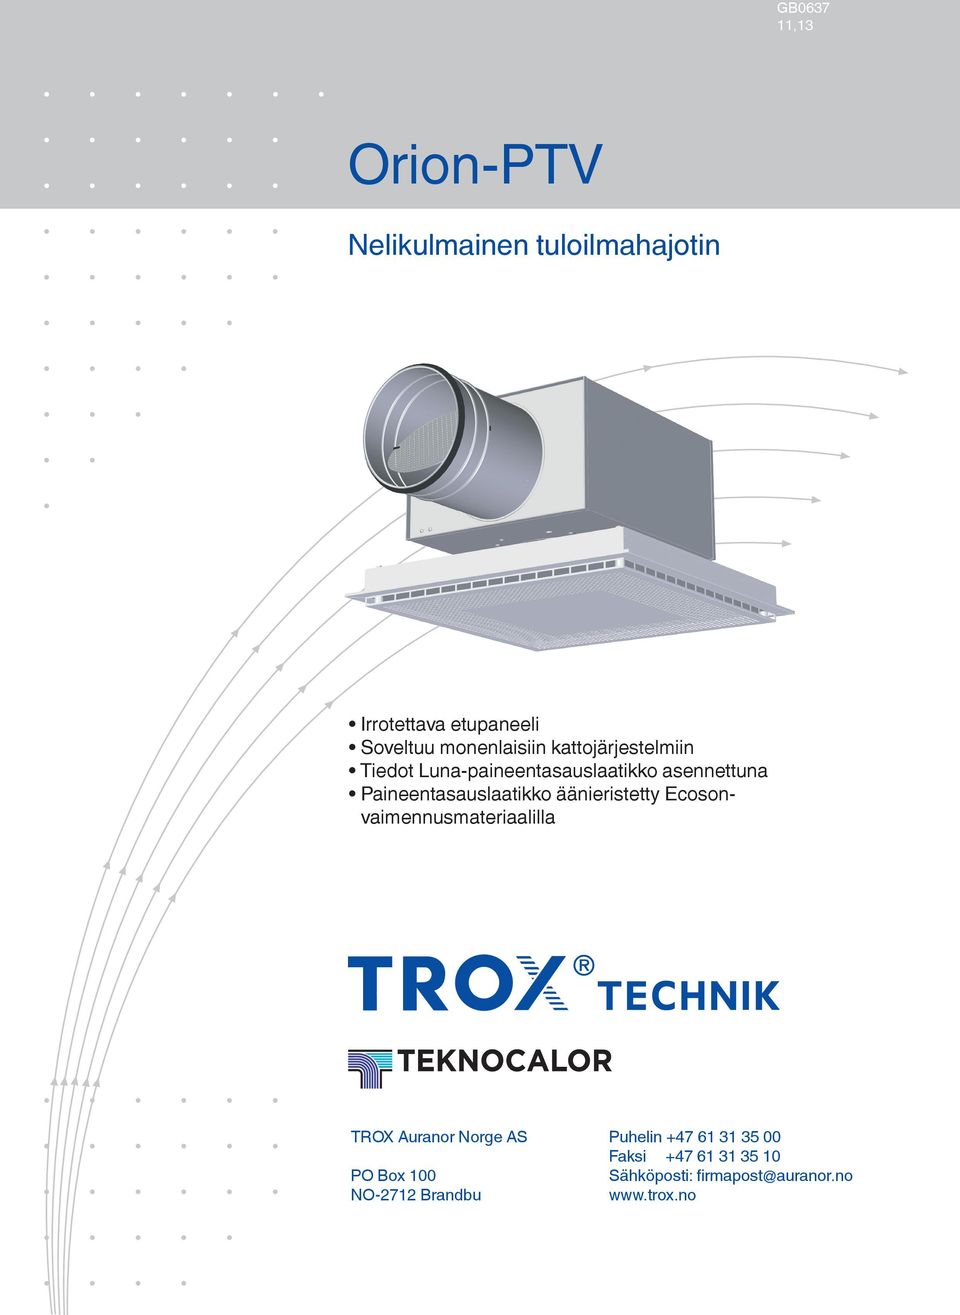 Paineentasauslaatikko äänieristetty Ecosonvaimennusmateriaalilla TROX Auranor Norge AS PO Box